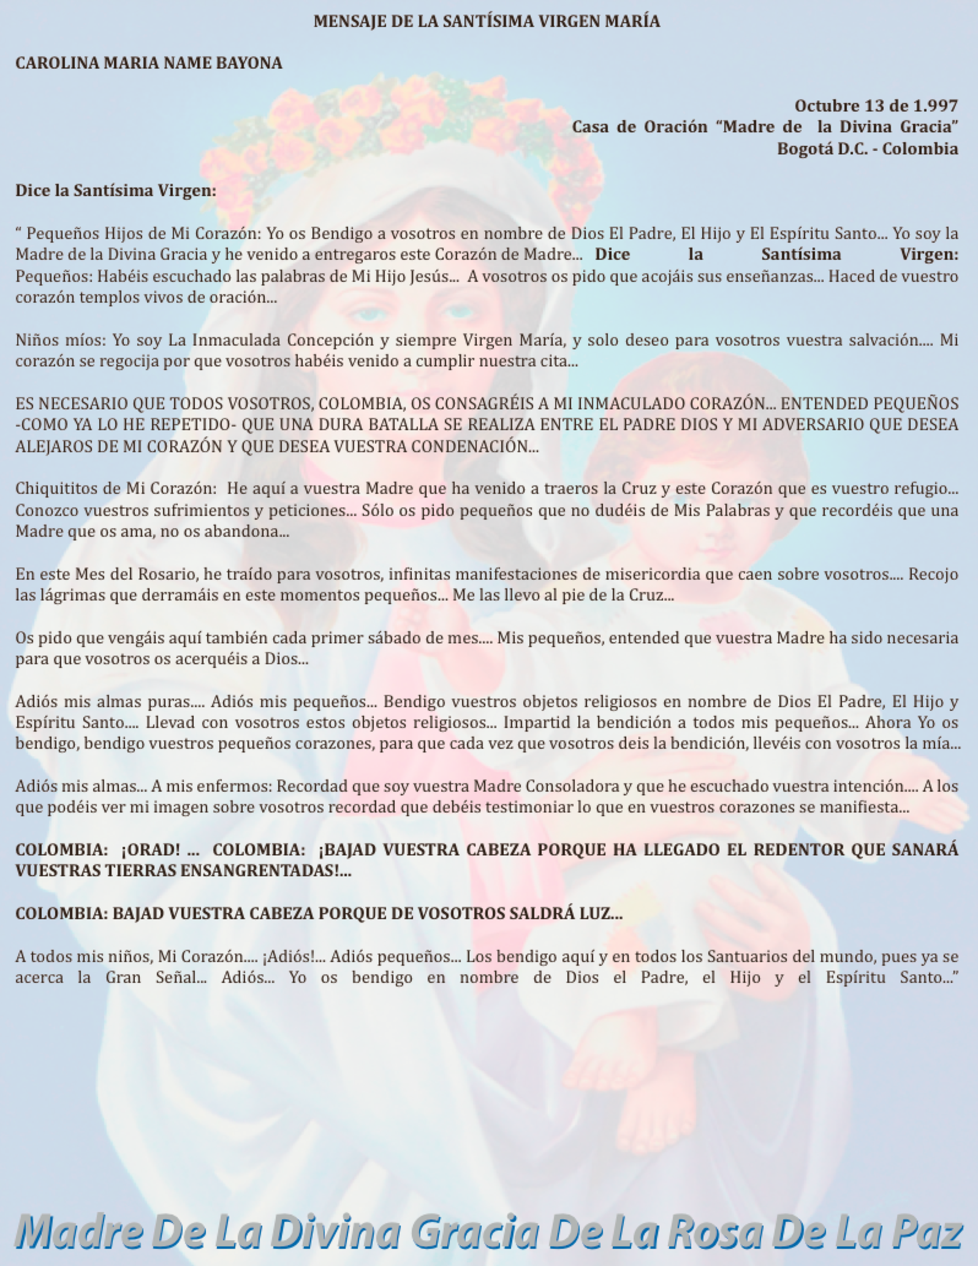 OCTUBRE 13 de 1997 Bogotá Colombia - mensaje de la virgen